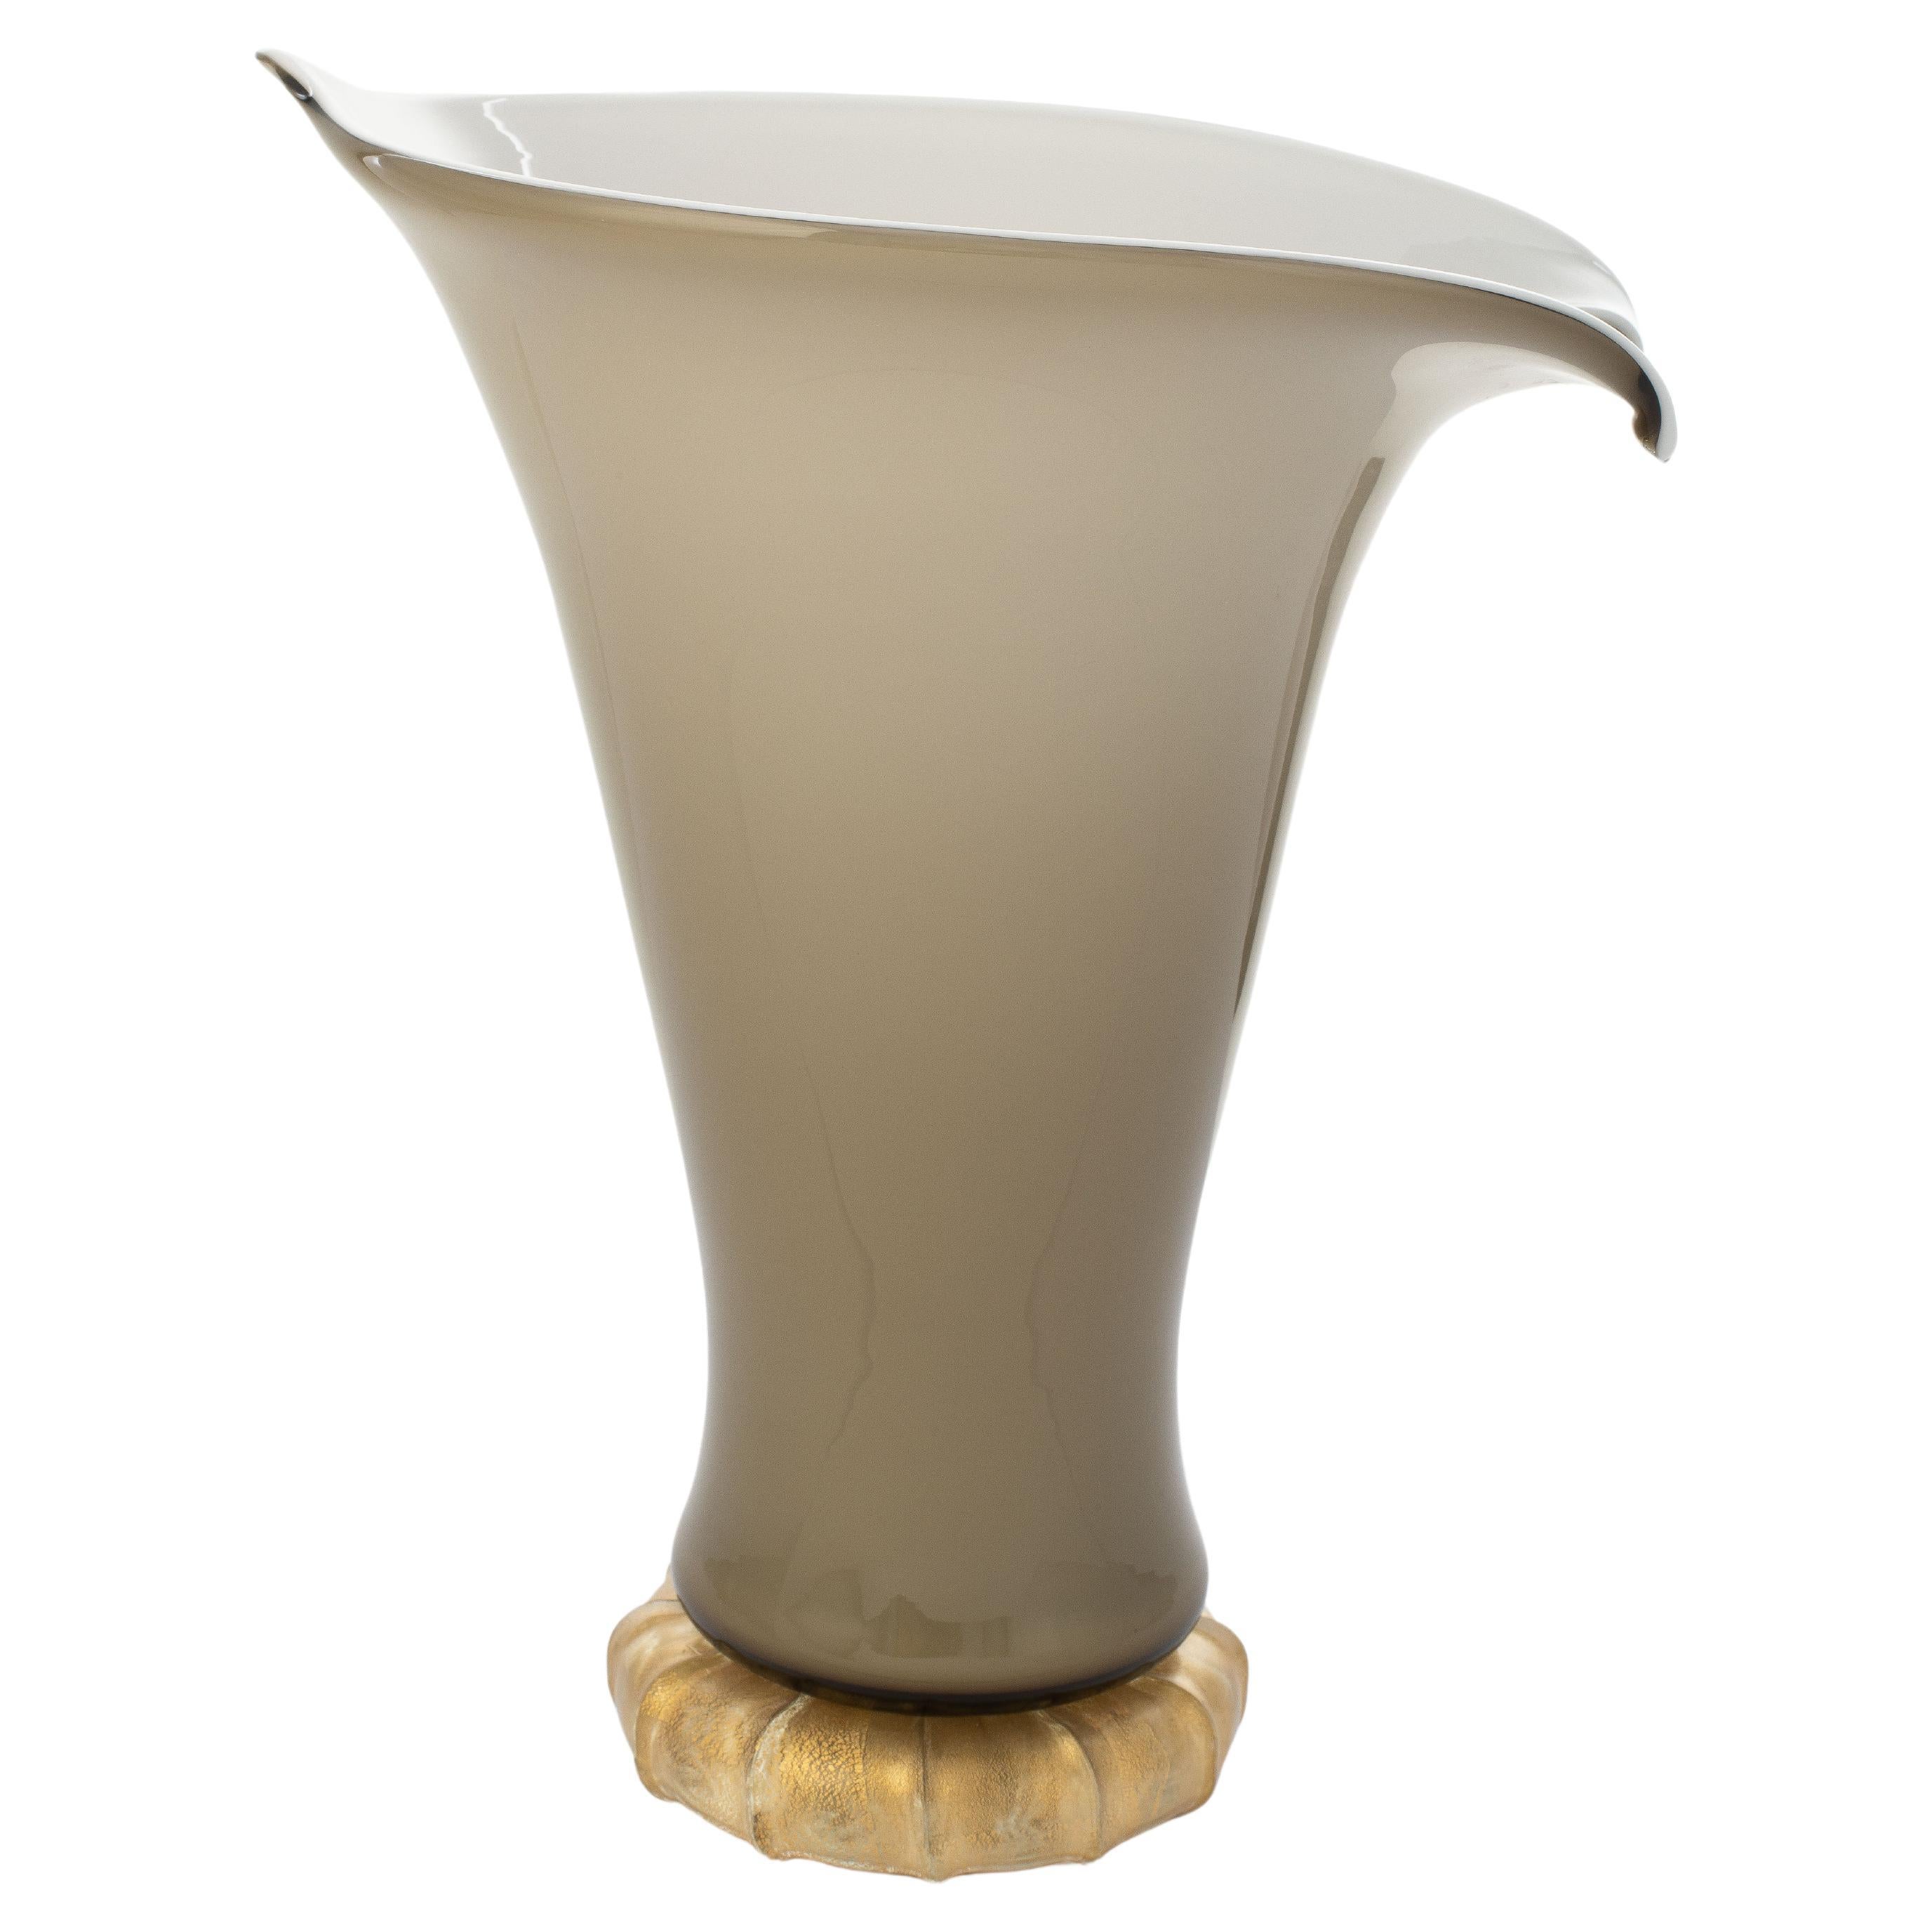 1295 Murano Hand Made Art Glass Venezia Doge Vase